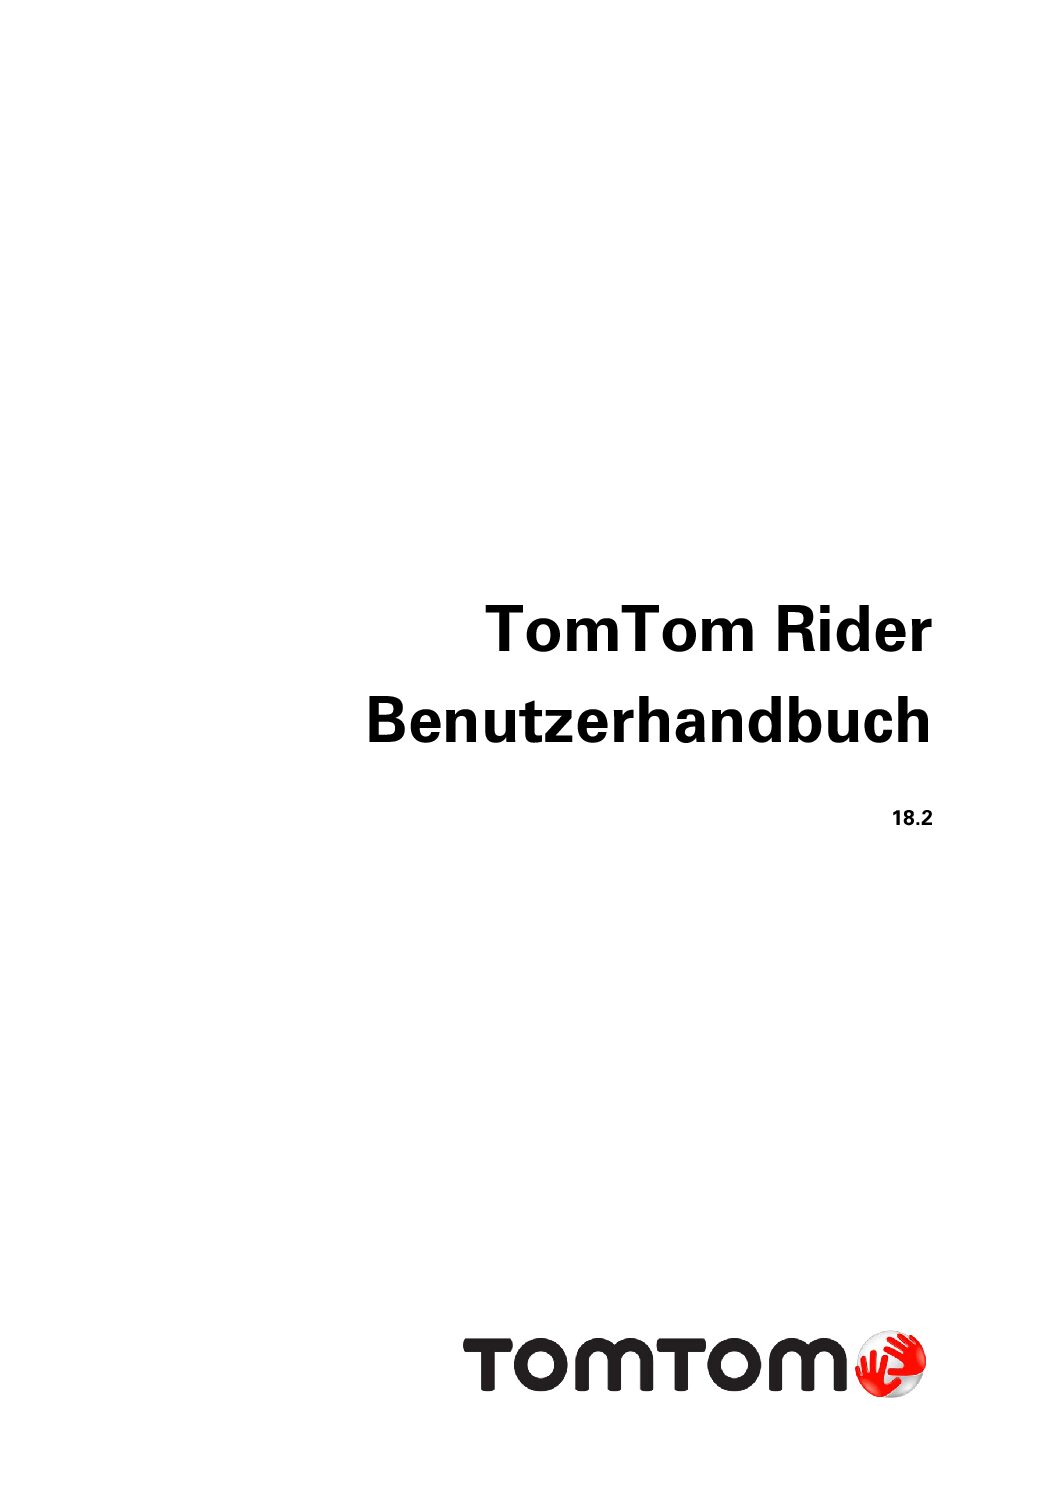 TomTom Rider 550 Bedienungsanleitung